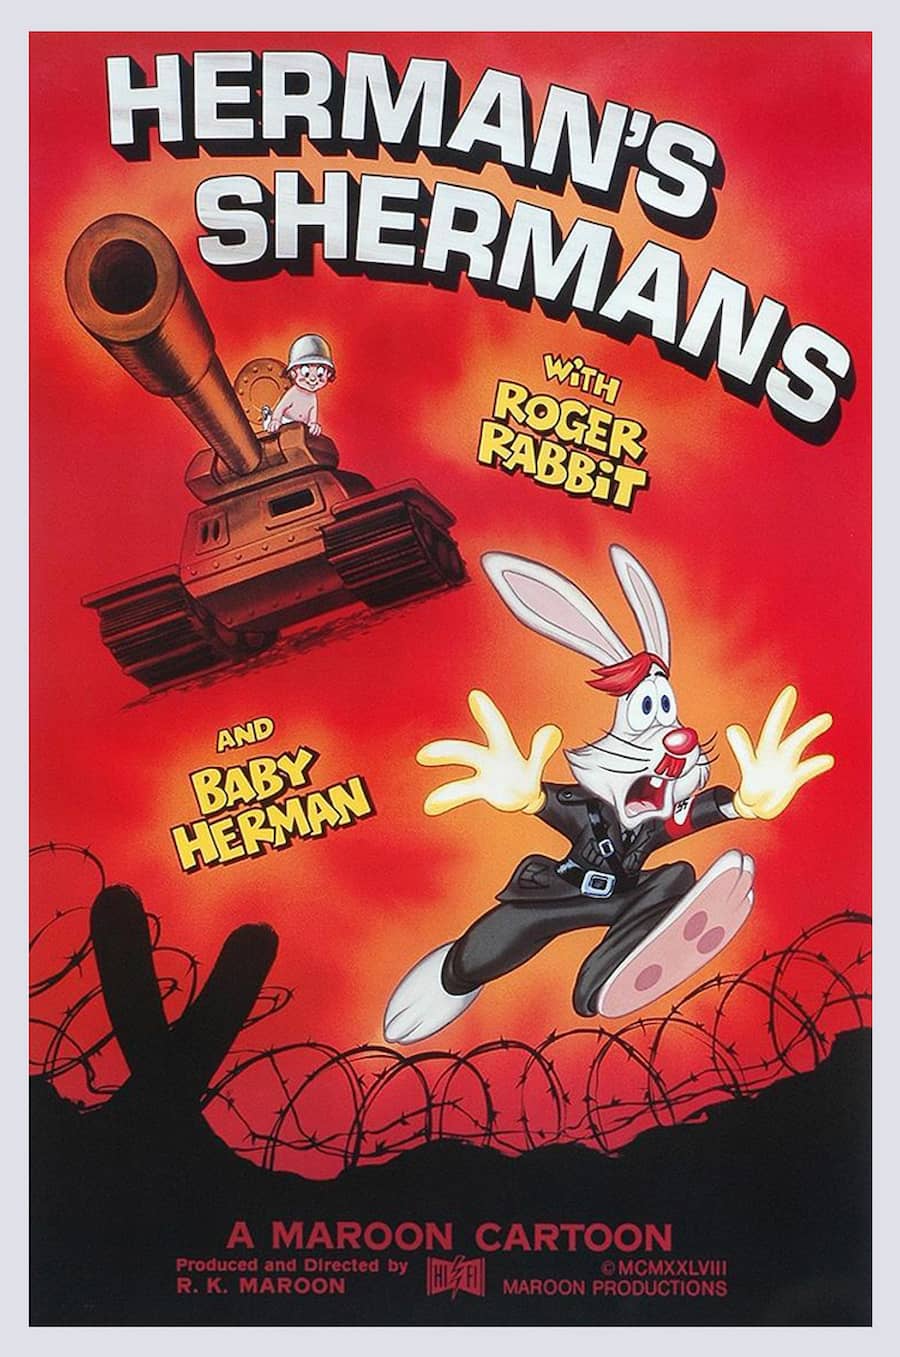 Herman’s Shermans